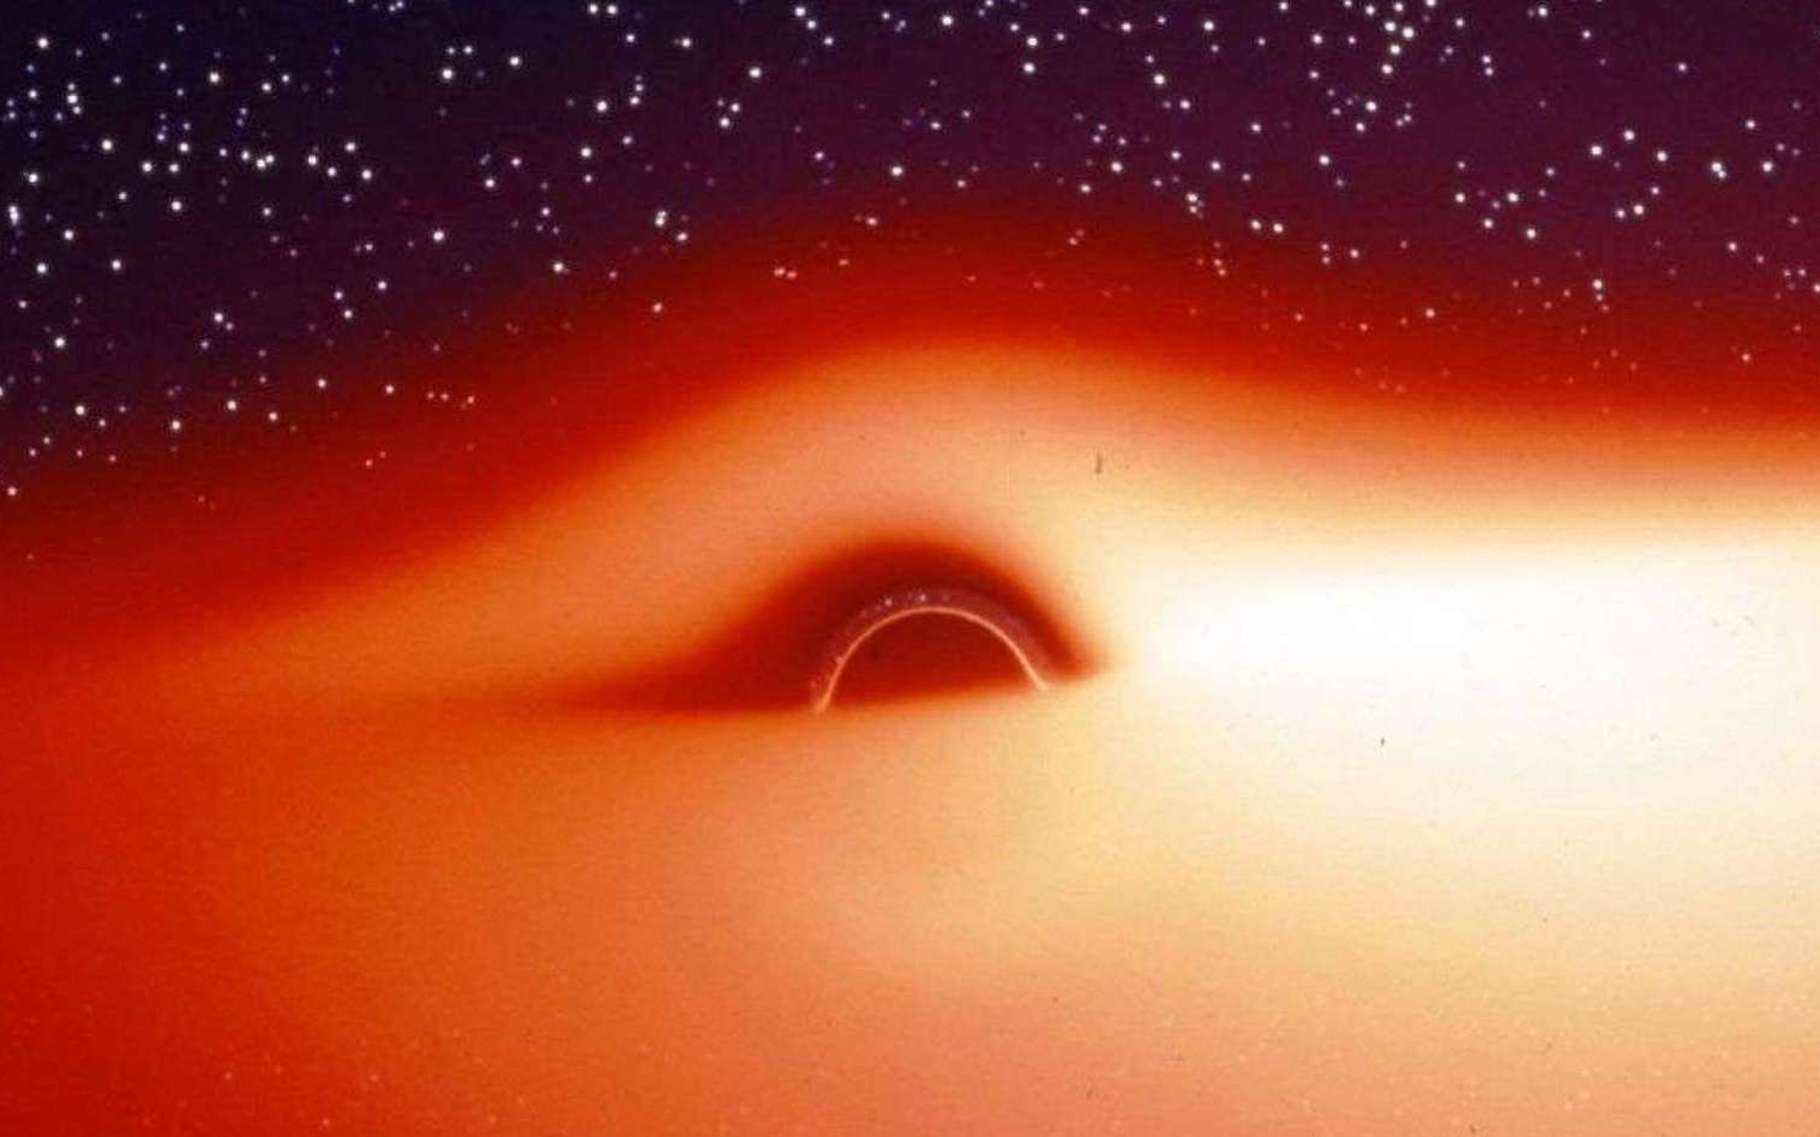 Le champ de gravitation d'un trou noir déforme fortement l'image du disque d'accrétion chaud et lumineux qui l'entoure. Extraite d'une simulation, cette illustration montre ce que verrait un observateur s'approchant de l'astre compact selon une direction légèrement inclinée au-dessus du disque d'accrétion. La partie du disque située derrière le trou noir semble tordue à 90° et devient visible. Jean-Pierre Luminet a fait la première simulation de ces images en 1979. © Jean-Pierre Luminet, Jean-Alain Marck